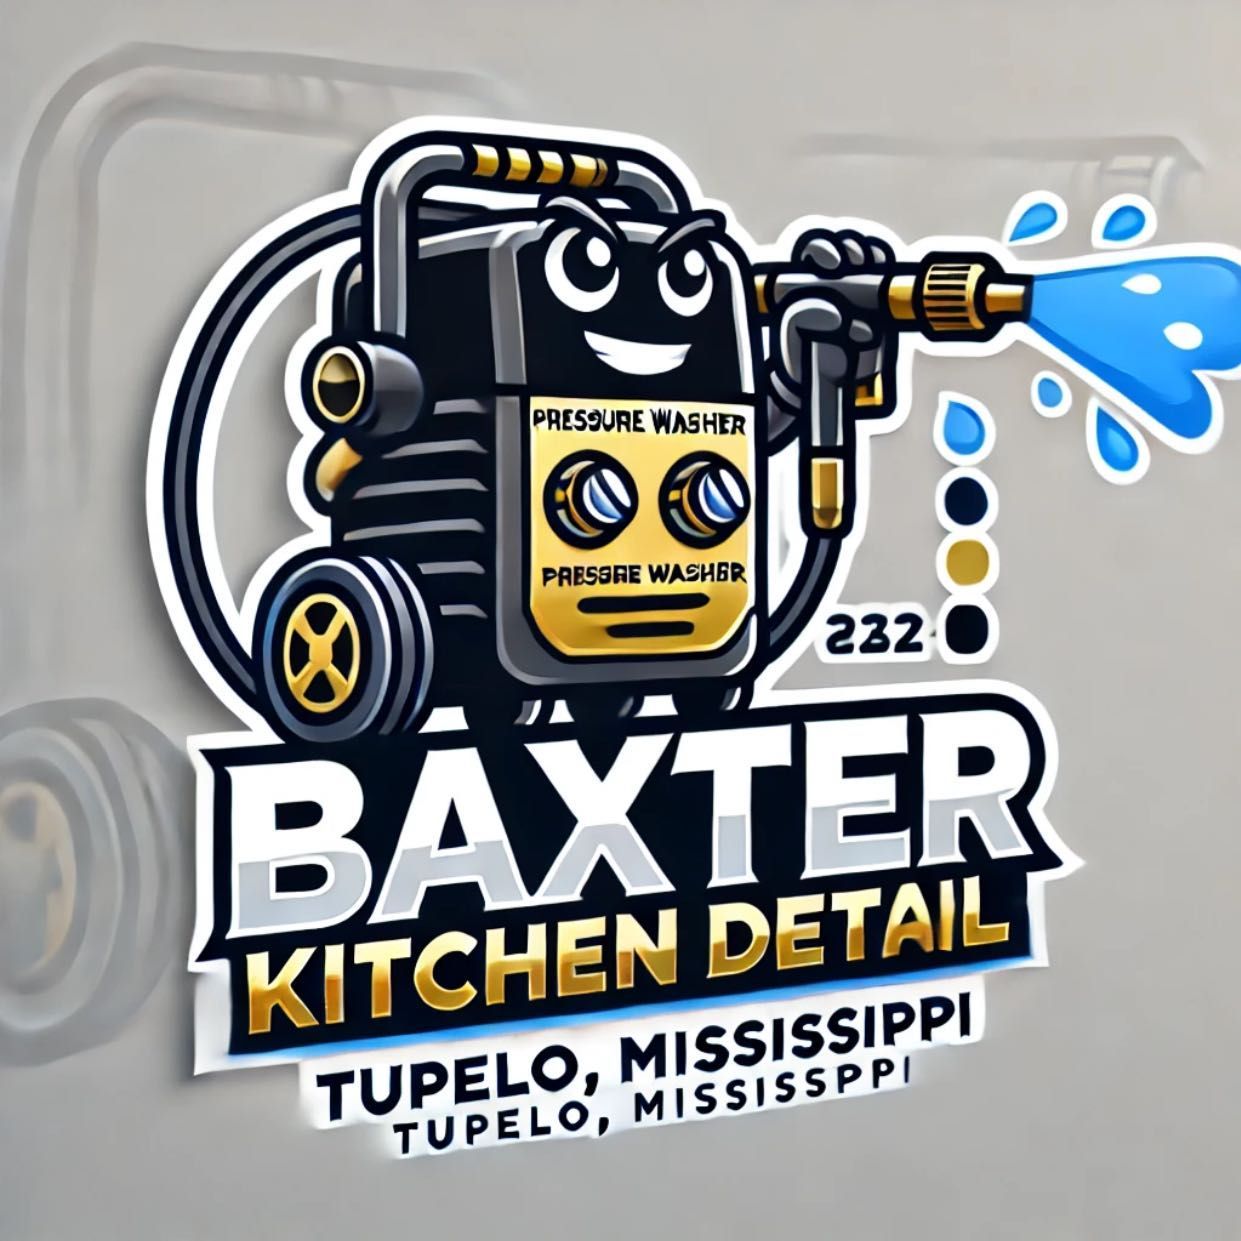 Baxter Kitchen Detail, Saltillo, 38866